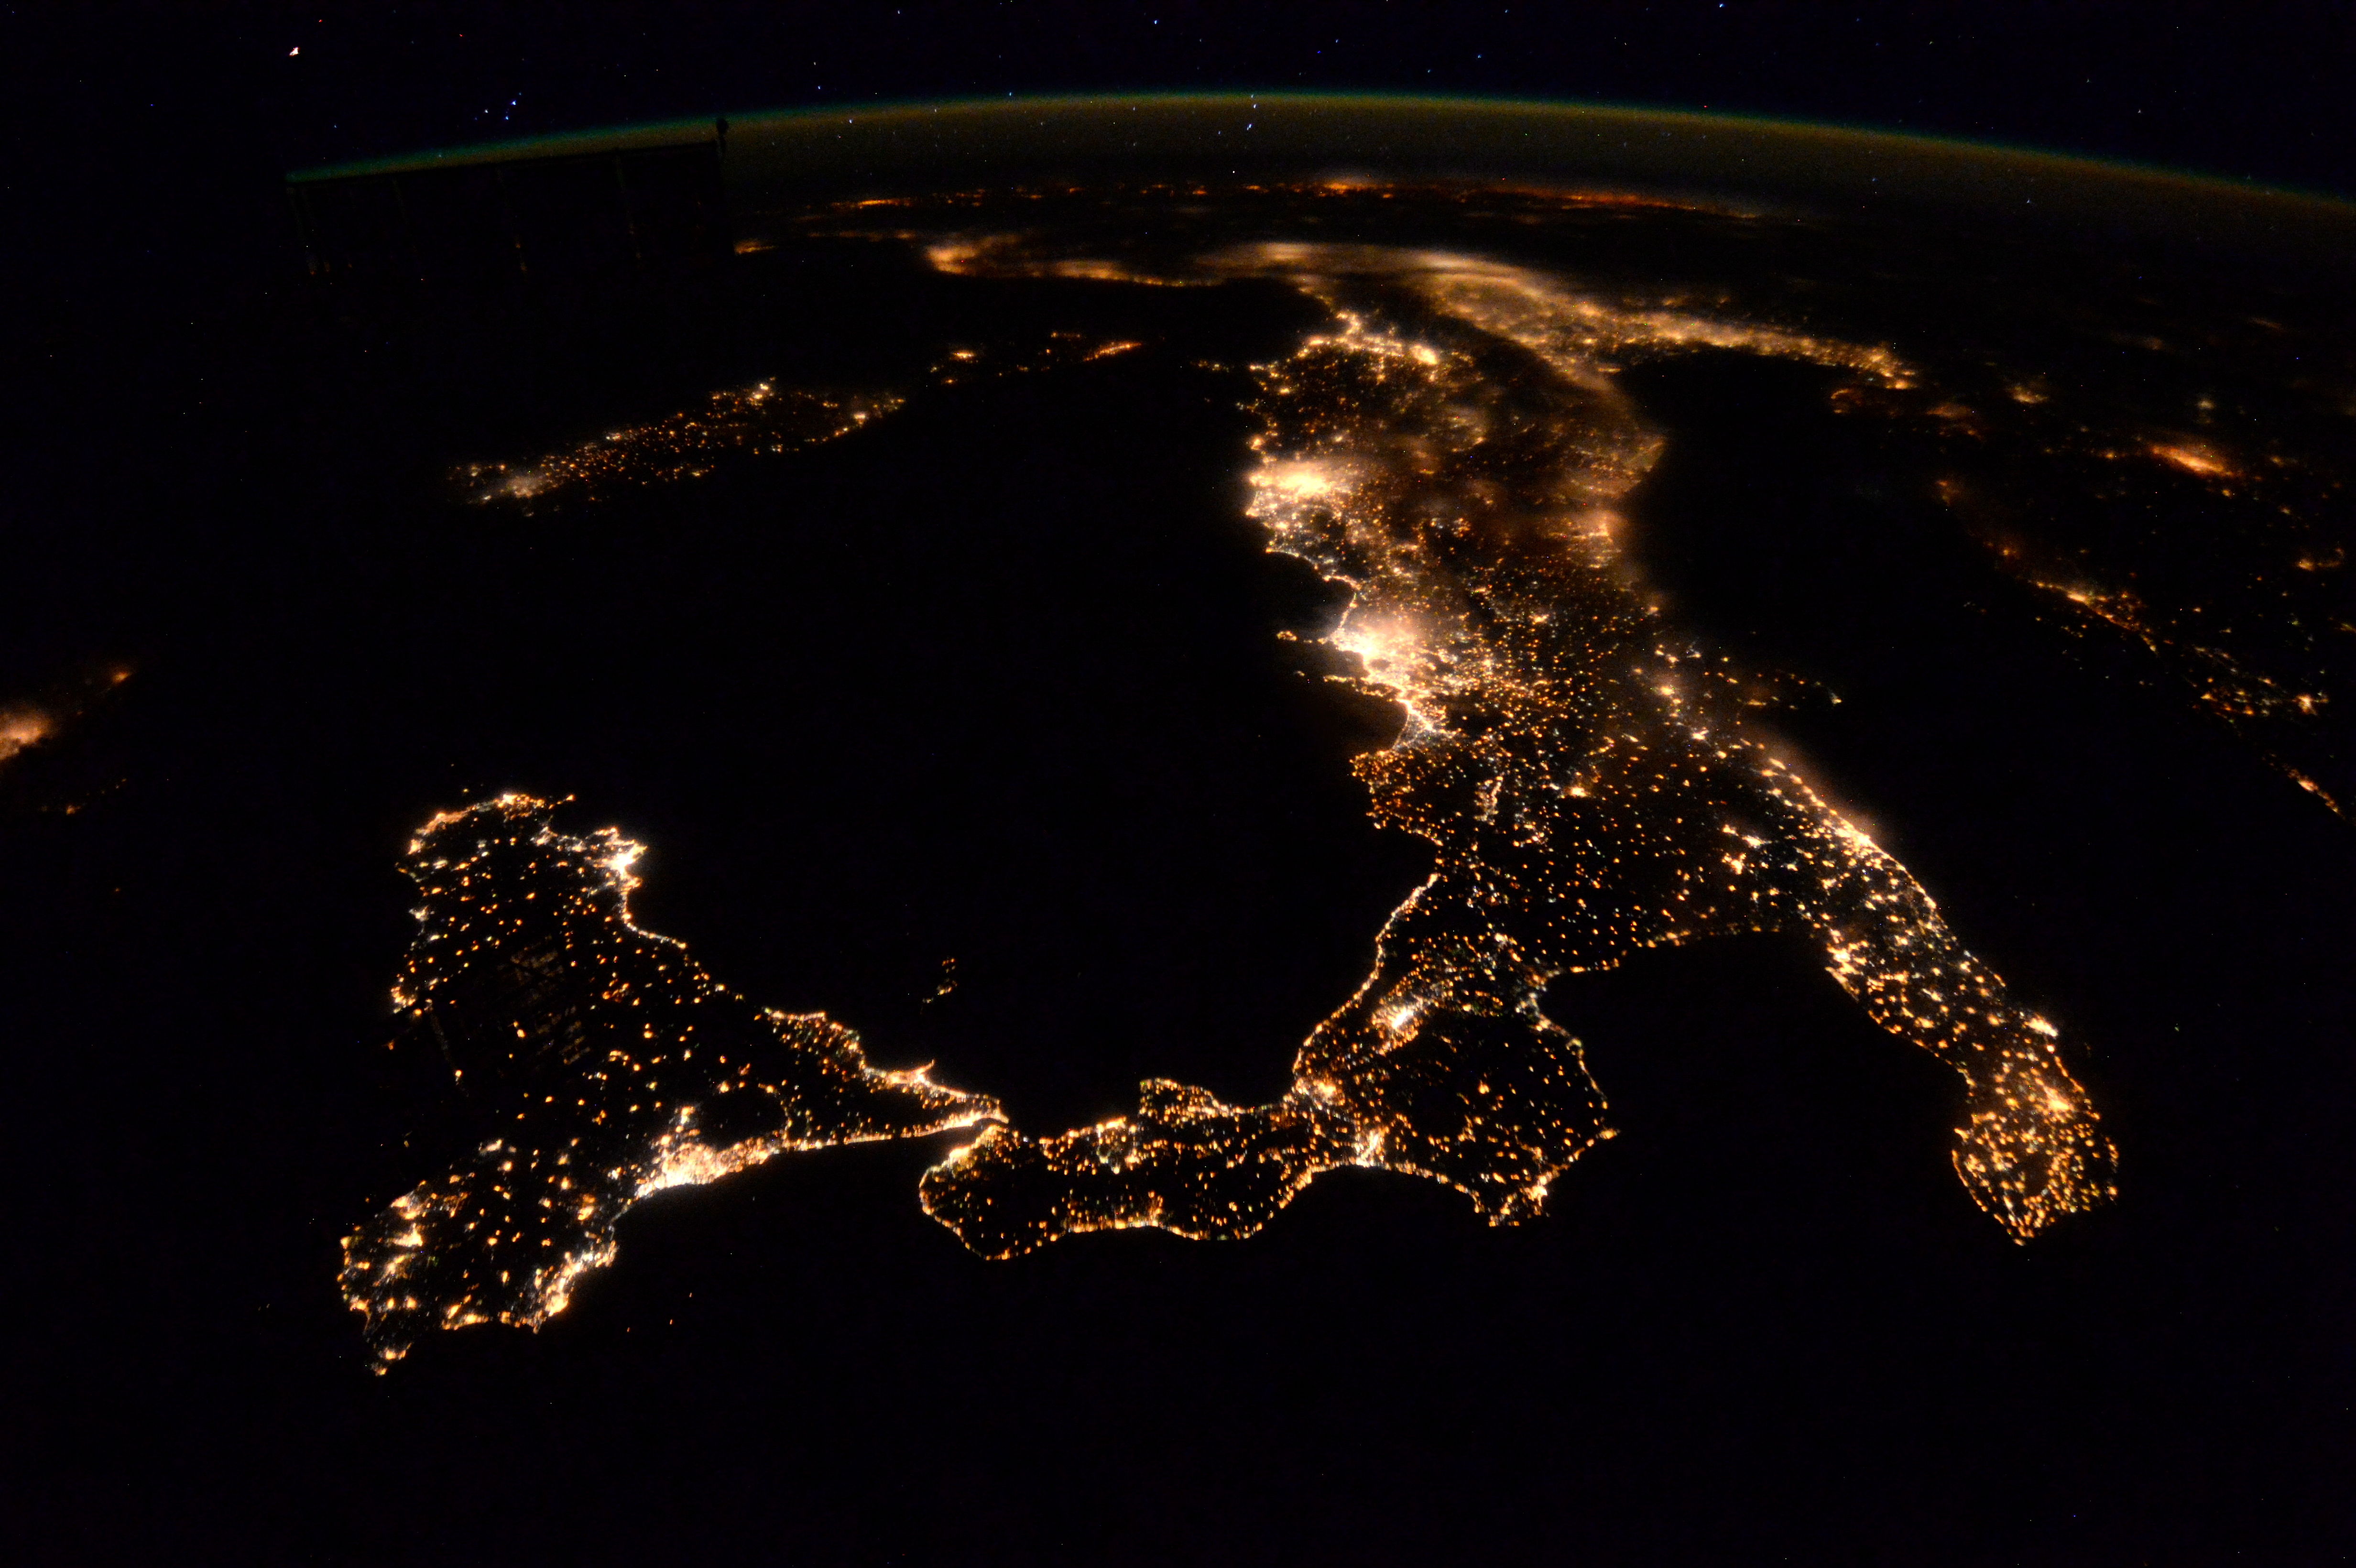 Обои реальном времени. Тель Авив из космоса ночью. Москва из космоса ночью. Красивый вид из космоса. Вид земли из космоса.